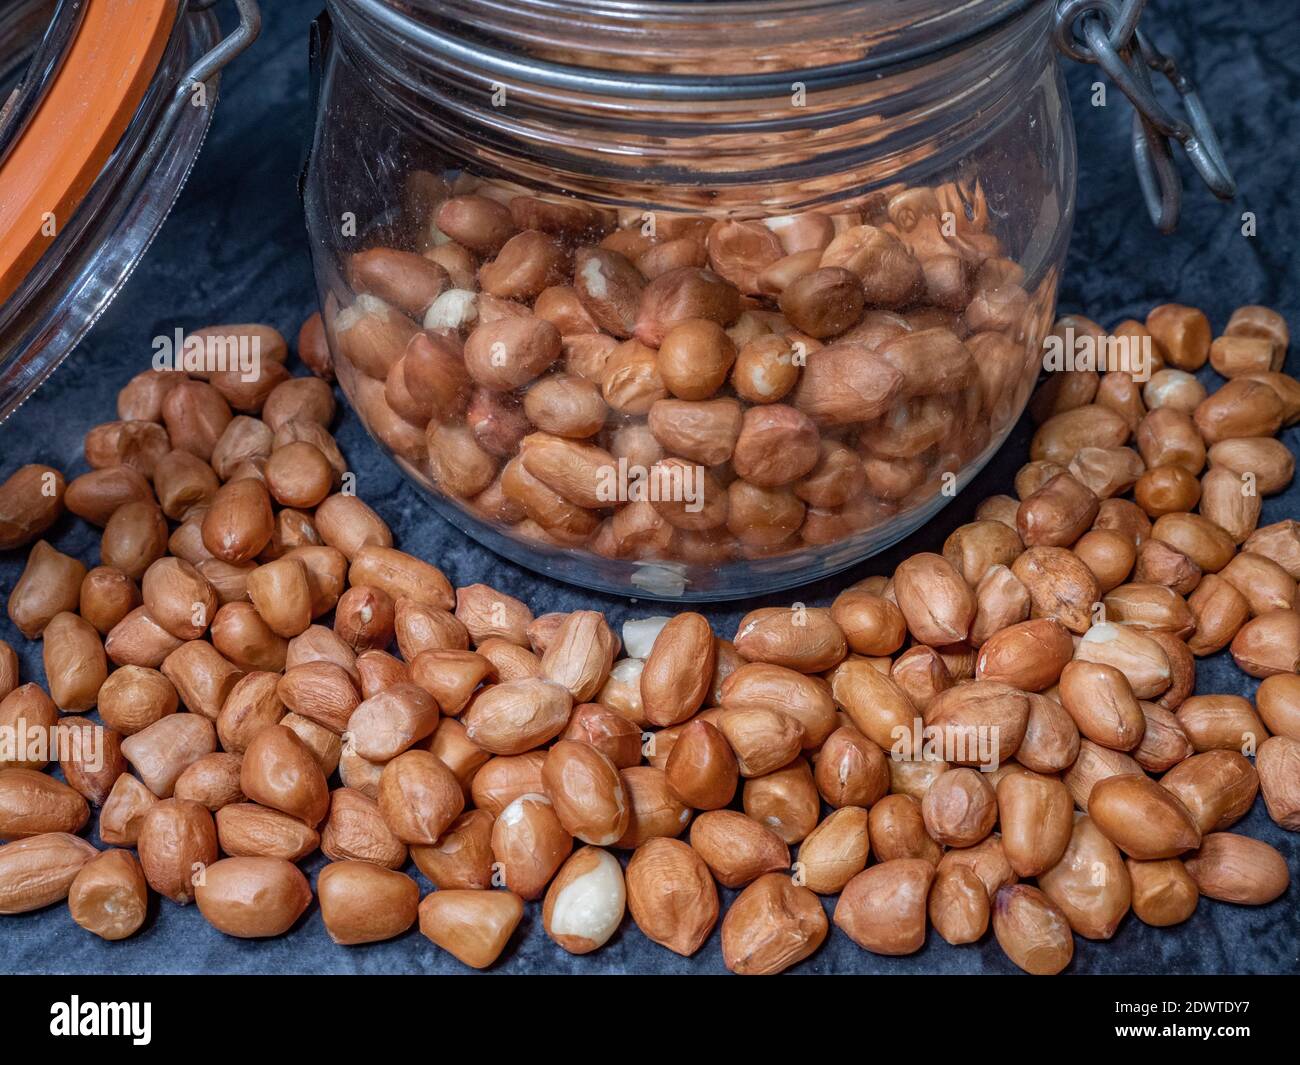 Nahaufnahme von rohen Erdnüssen (mit Samenbeschichtungen / Schalen intakt), innen und um ein Glas Vorratsglas, mit einem Metallverschluss und luftdichtem, gummiversiegeltem Deckel. Stockfoto